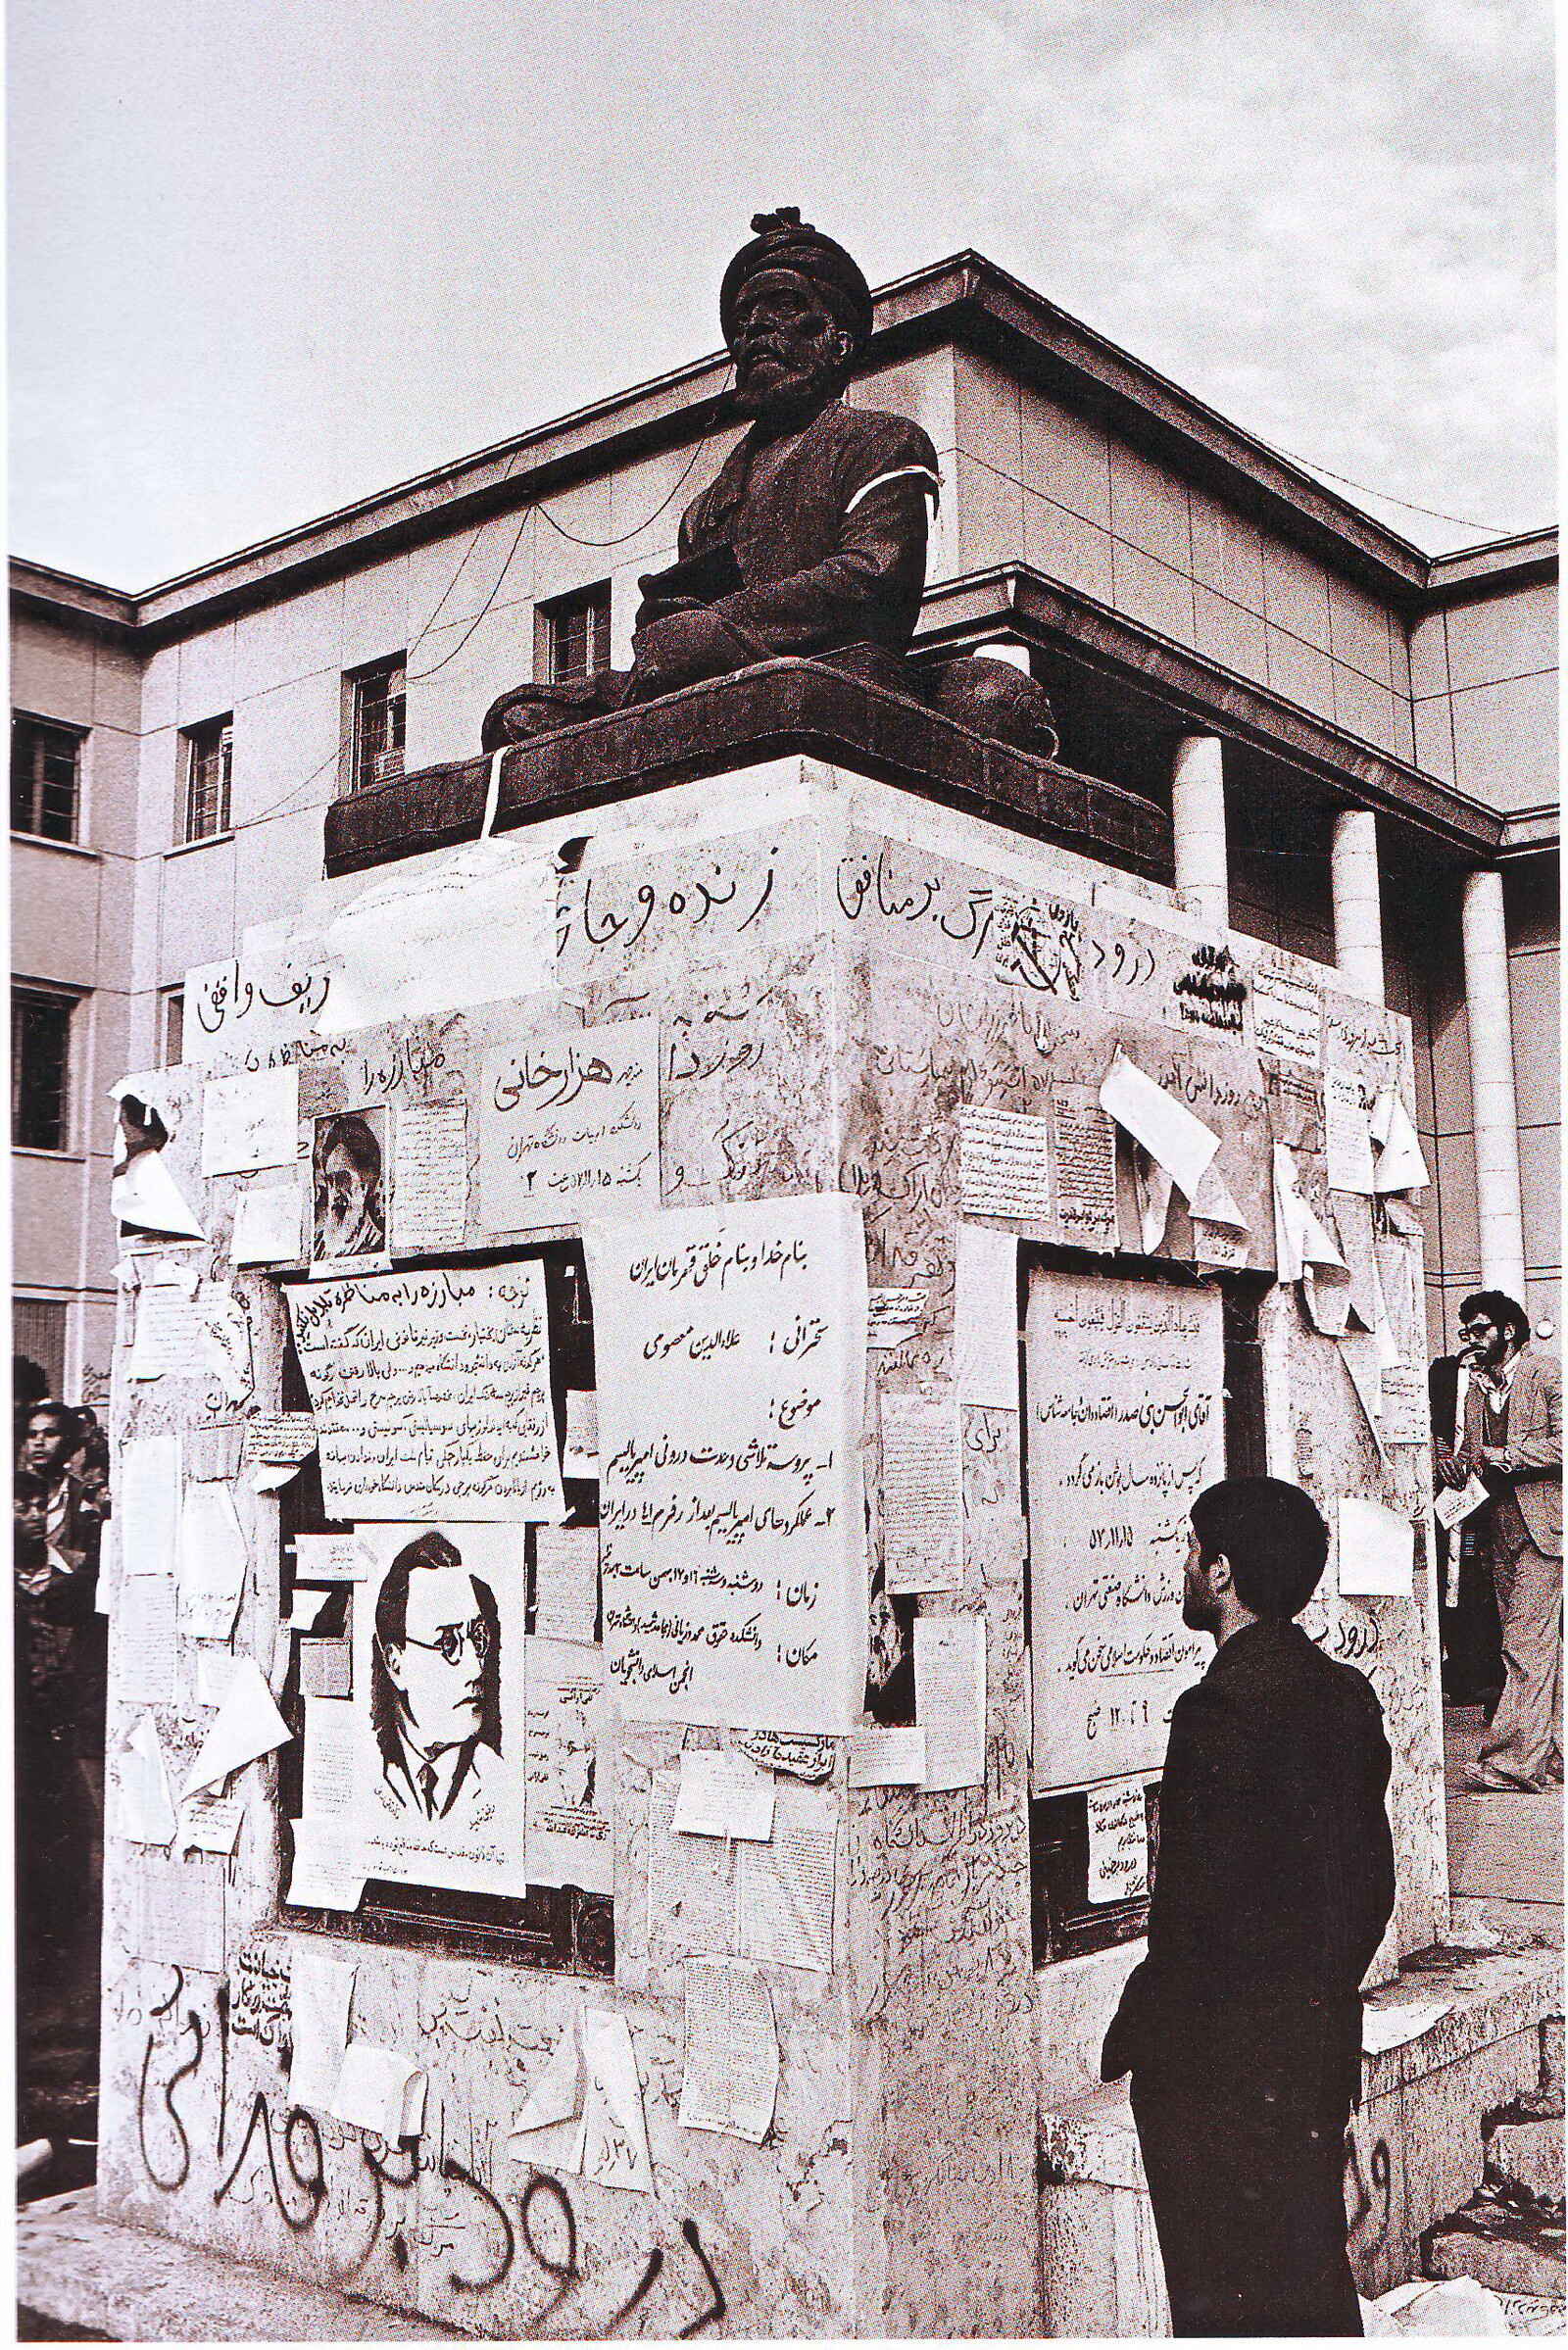 Denkmal des persischen Dichters Firdausi, Fotografin: Maryam Zandi -
aus dem Buch "The Revolution of Iran 79", Nazar Publishers, Teheran 2014